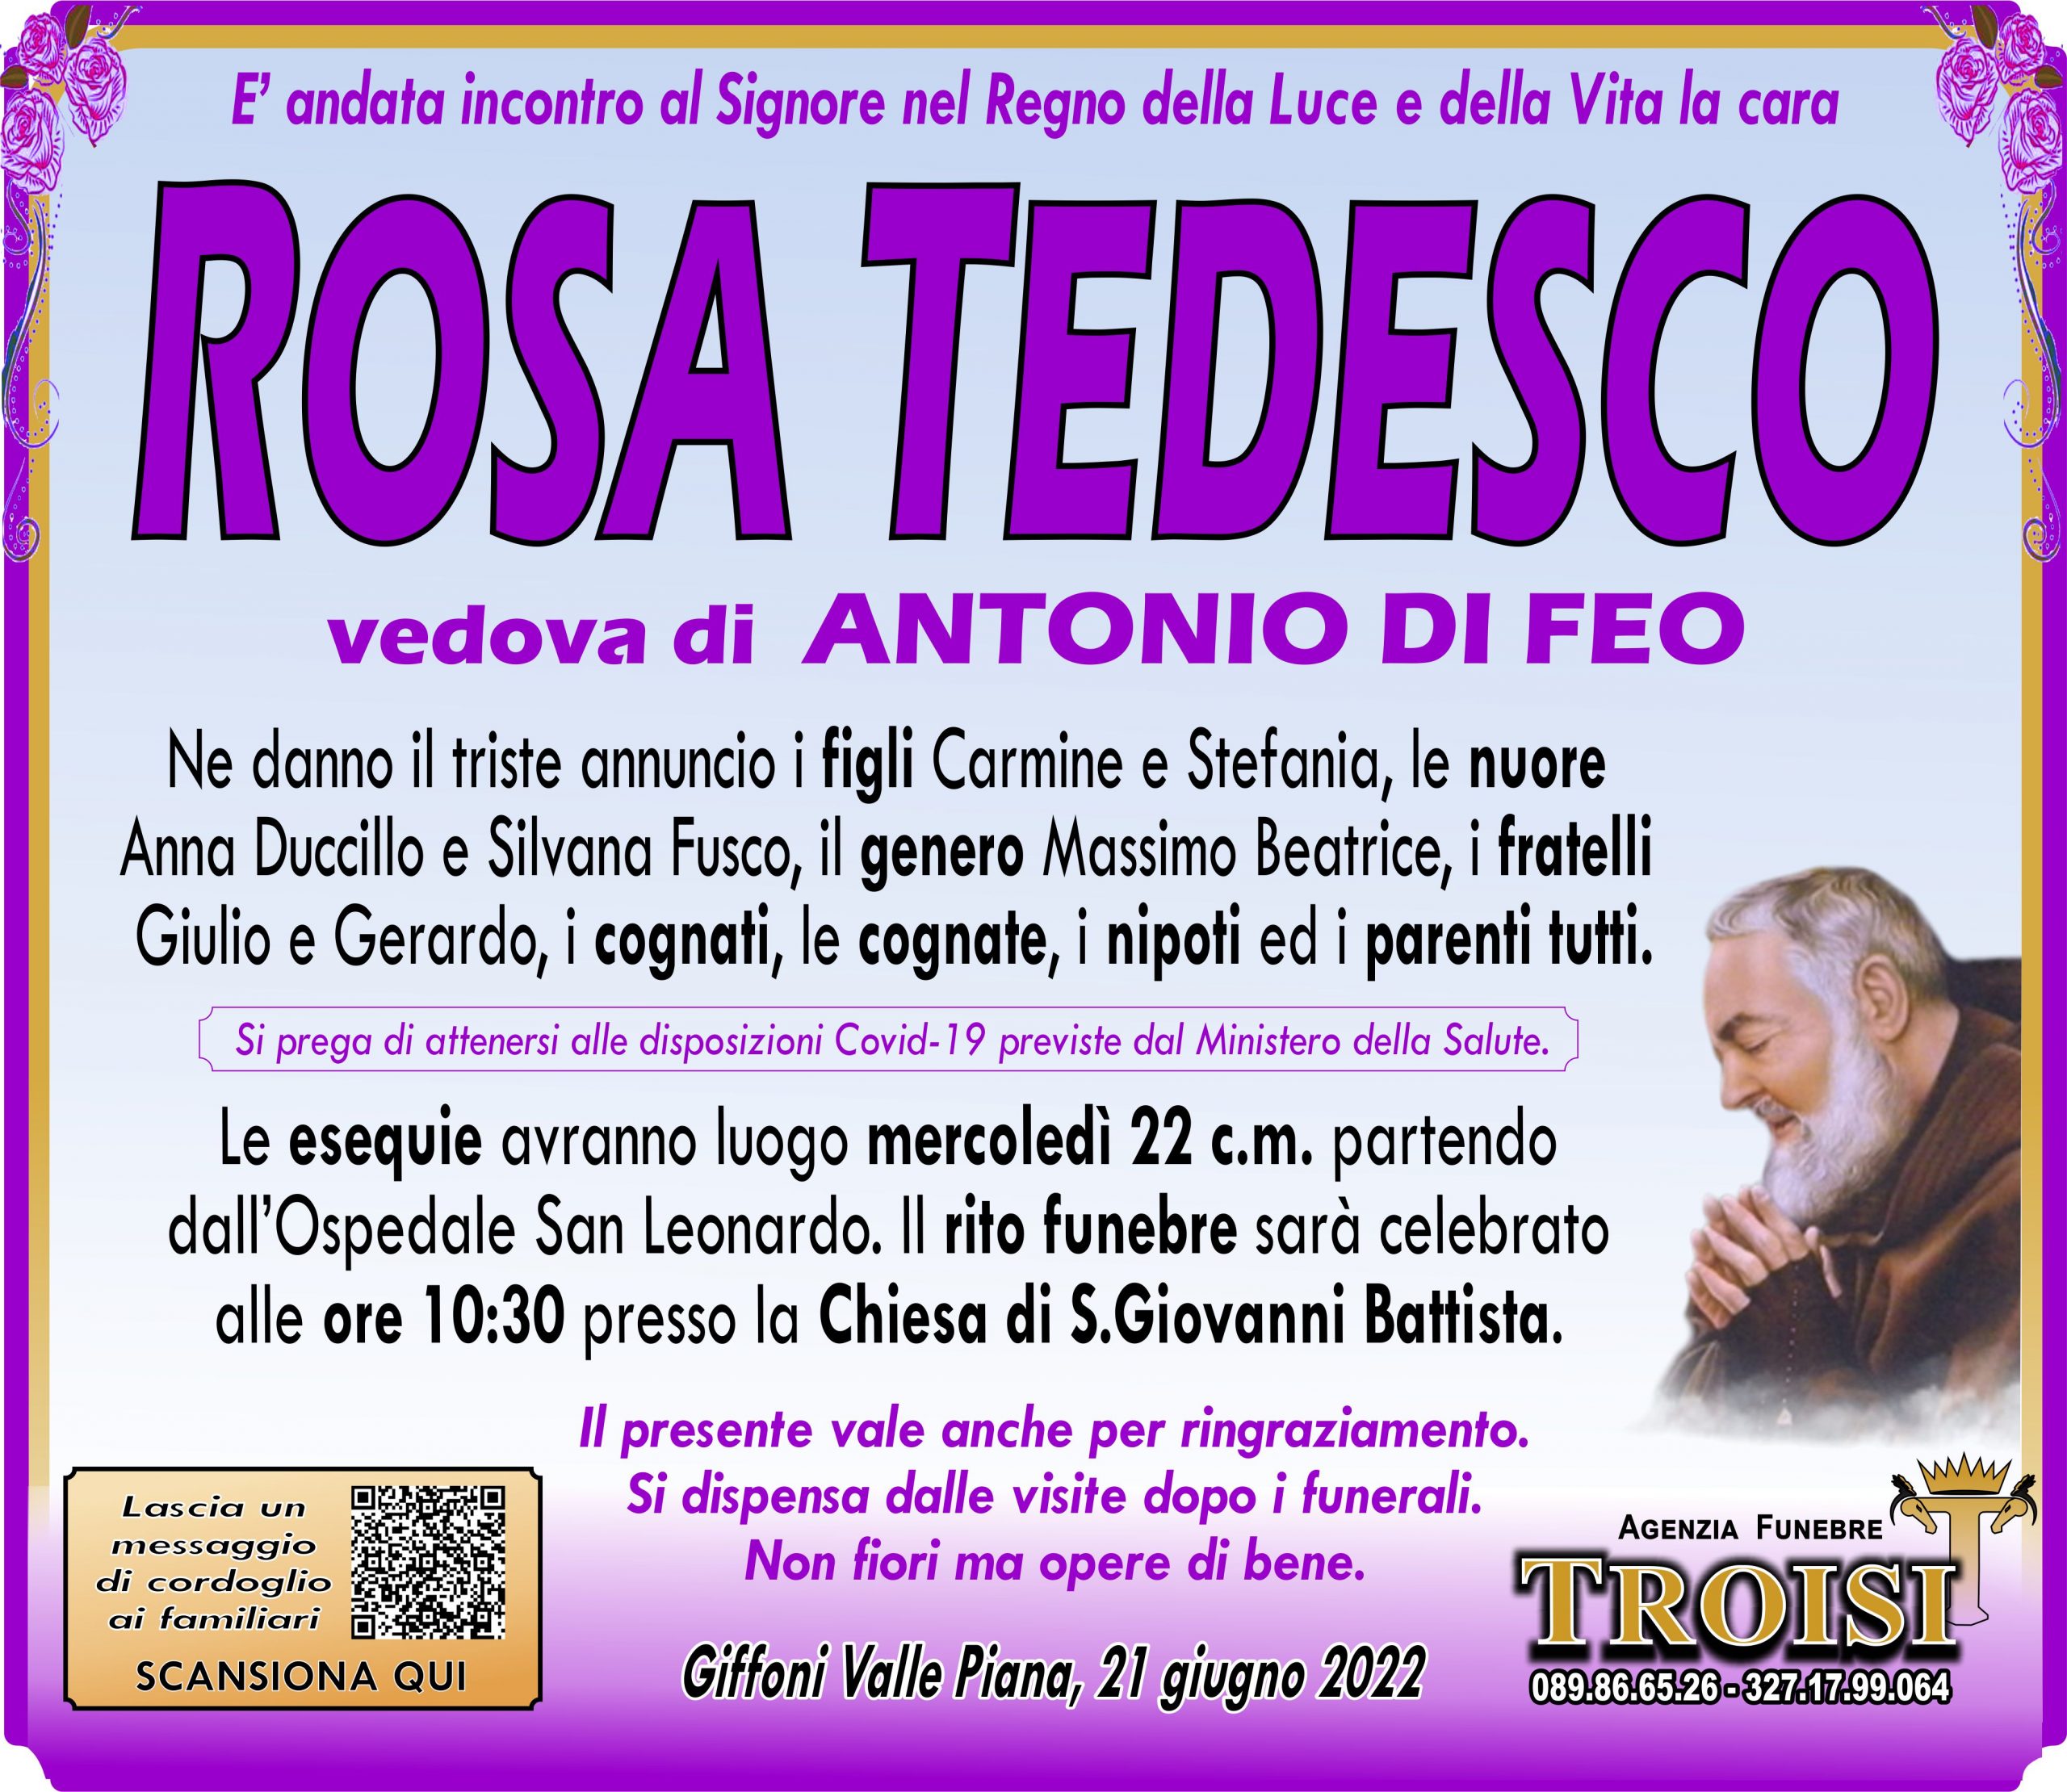 ROSA TEDESCO